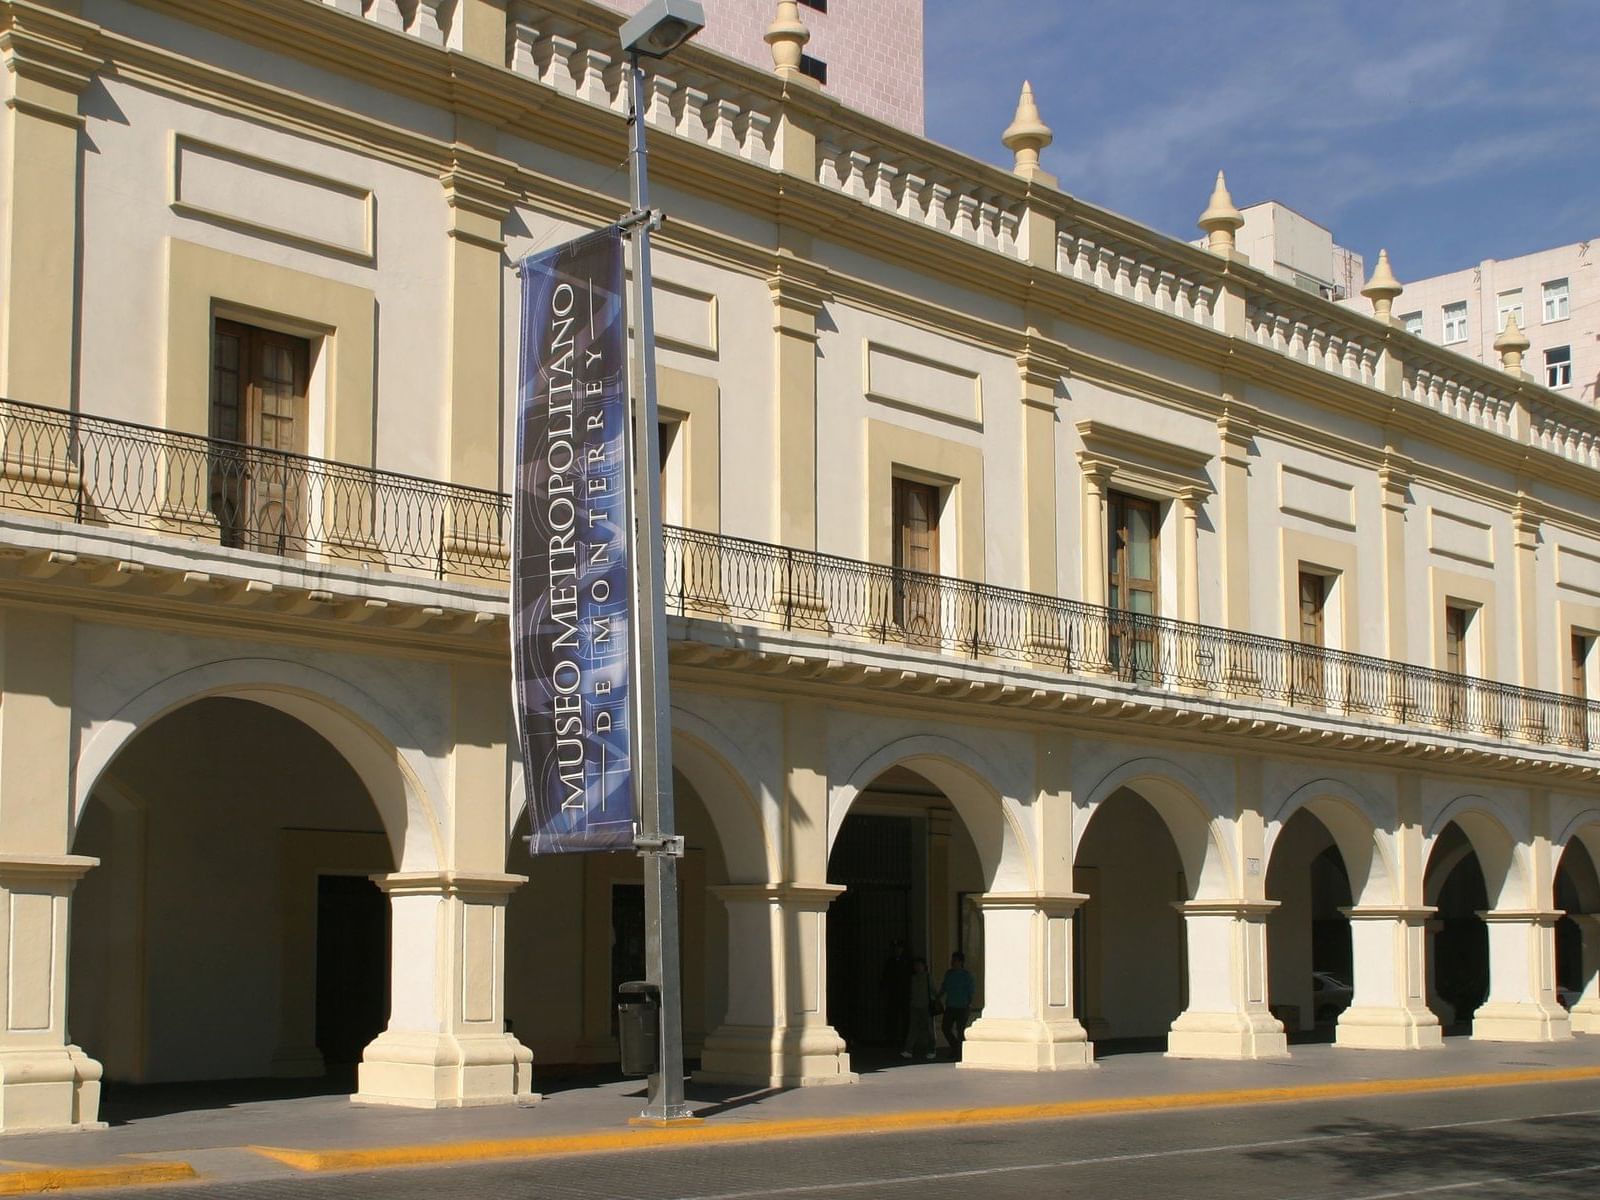 Building of the Metropolitan Museum in the Monterrey city